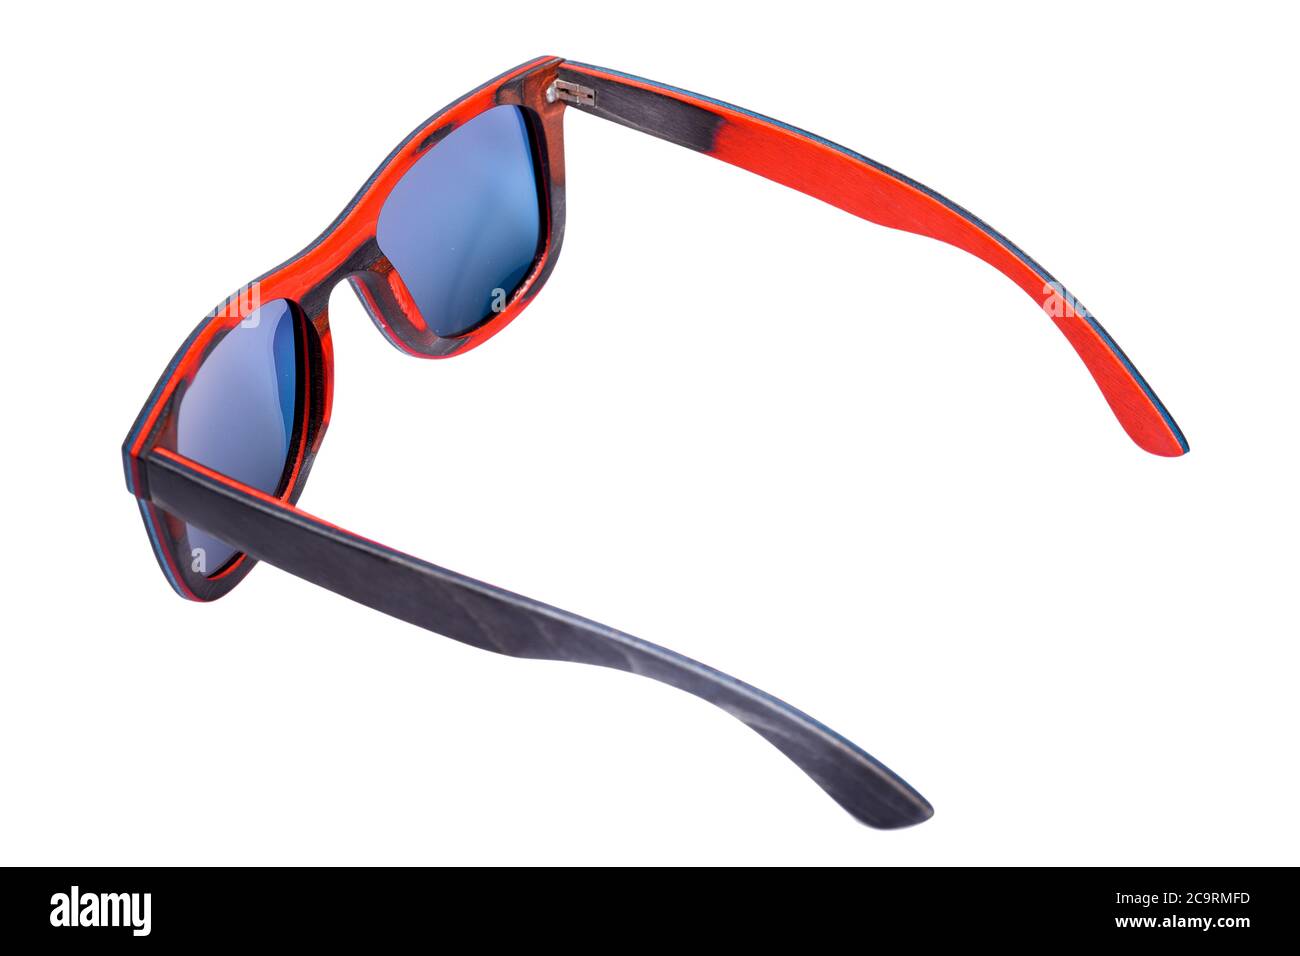 lunettes de soleil carrées de style 70 en bois rouge et verres bleus isolés  sur fond blanc. 3/4 vue arrière Photo Stock - Alamy